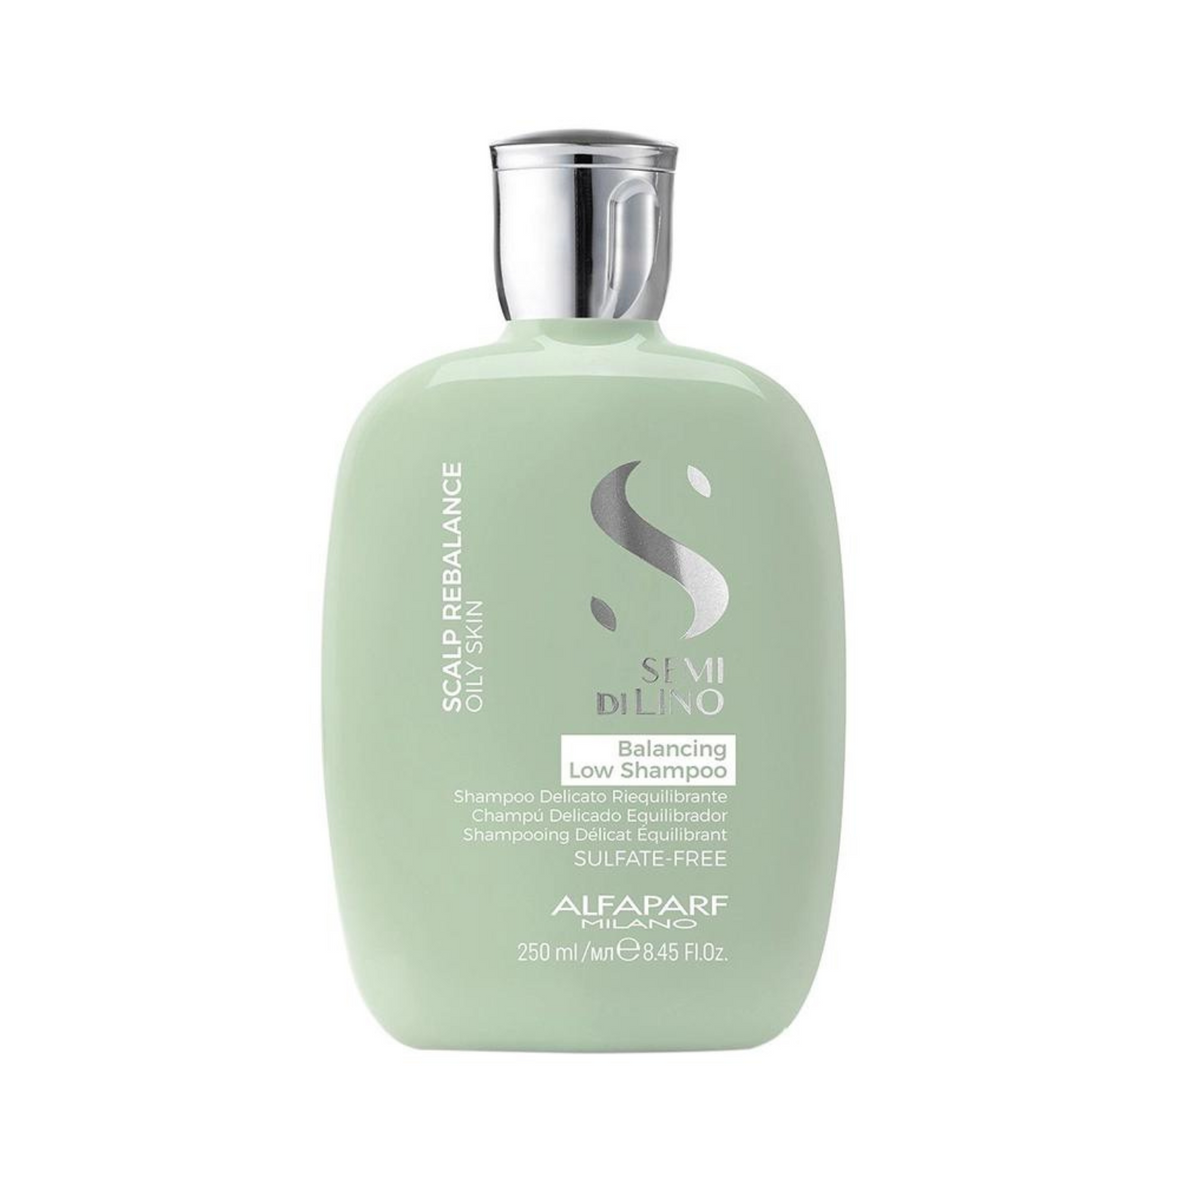 Sampon de echilibrare anti-sebum 250 ml Scalp Rebalansing Balancing Low Shampoo - Alfaparf